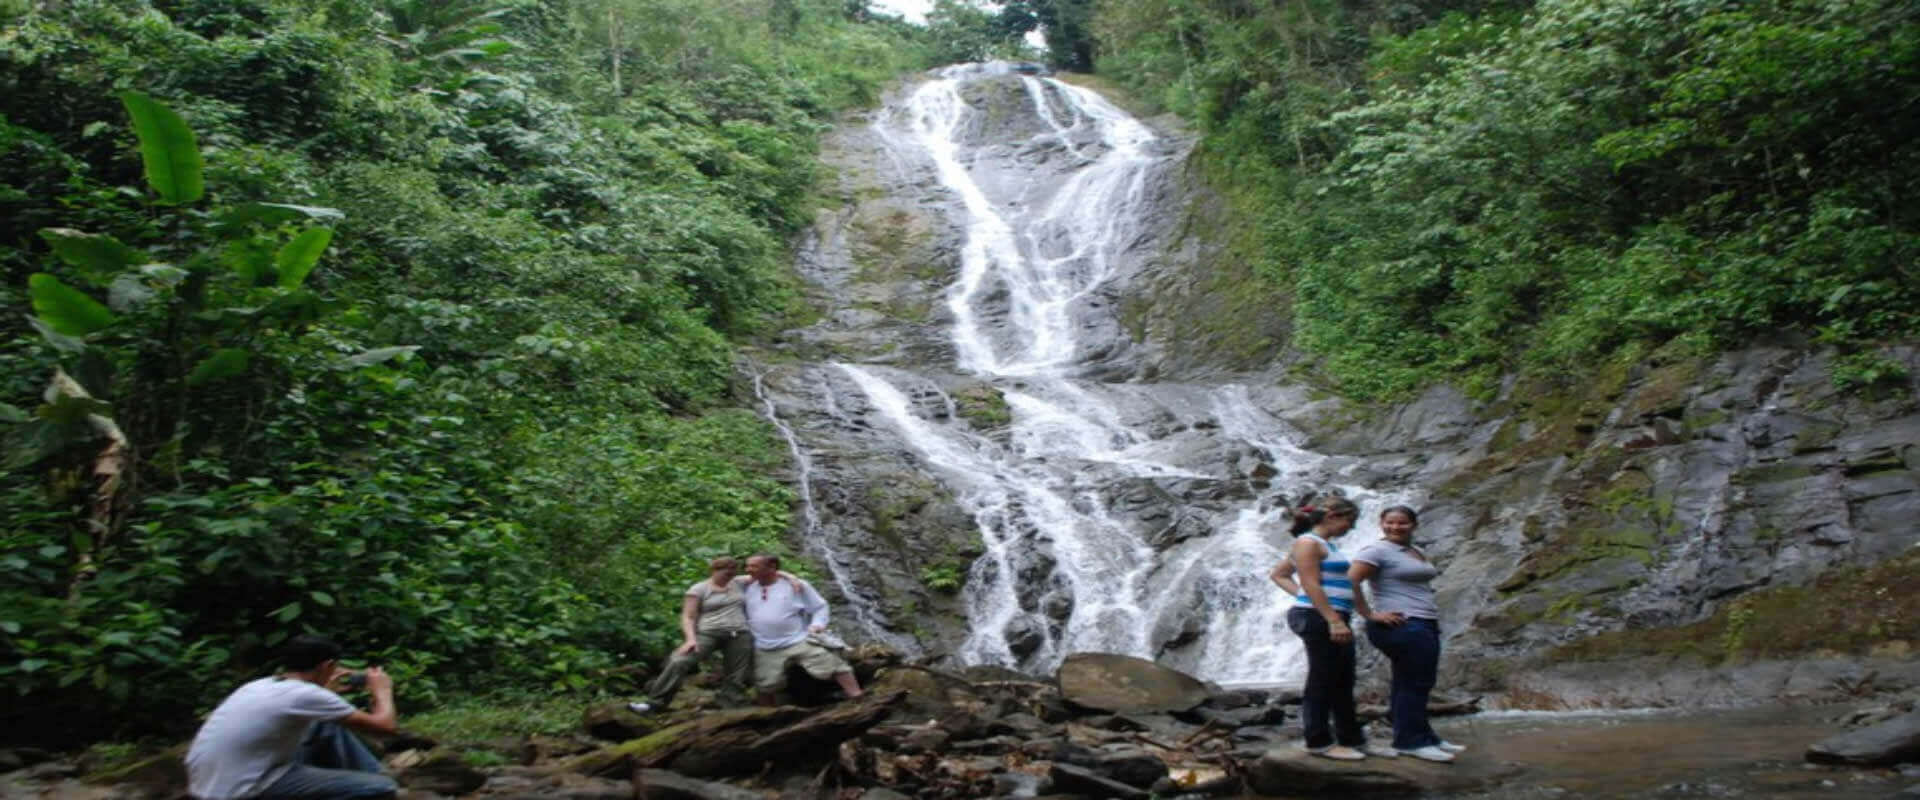 Cabalgata en bosque tropical | Costa Rica Jade Tours